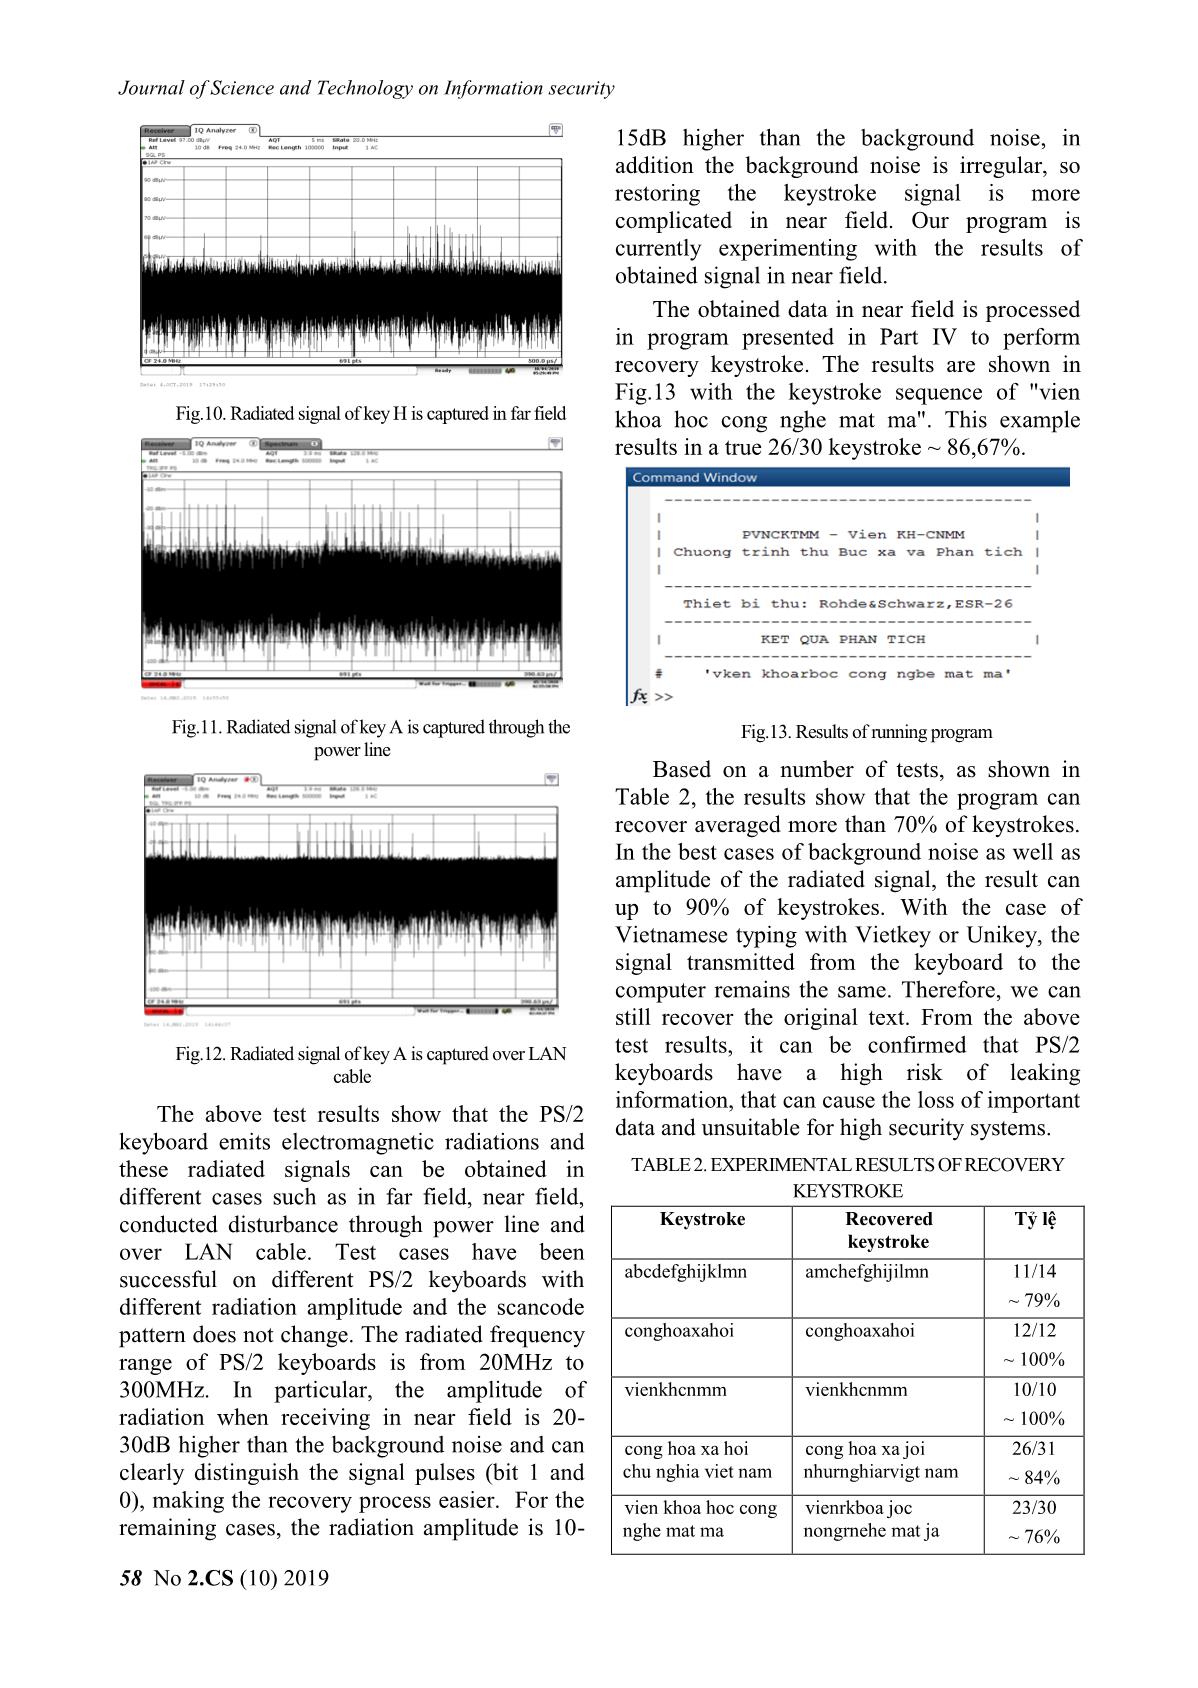 Information leakage through electromagnetic radiation of ps / 2 keyboard trang 8